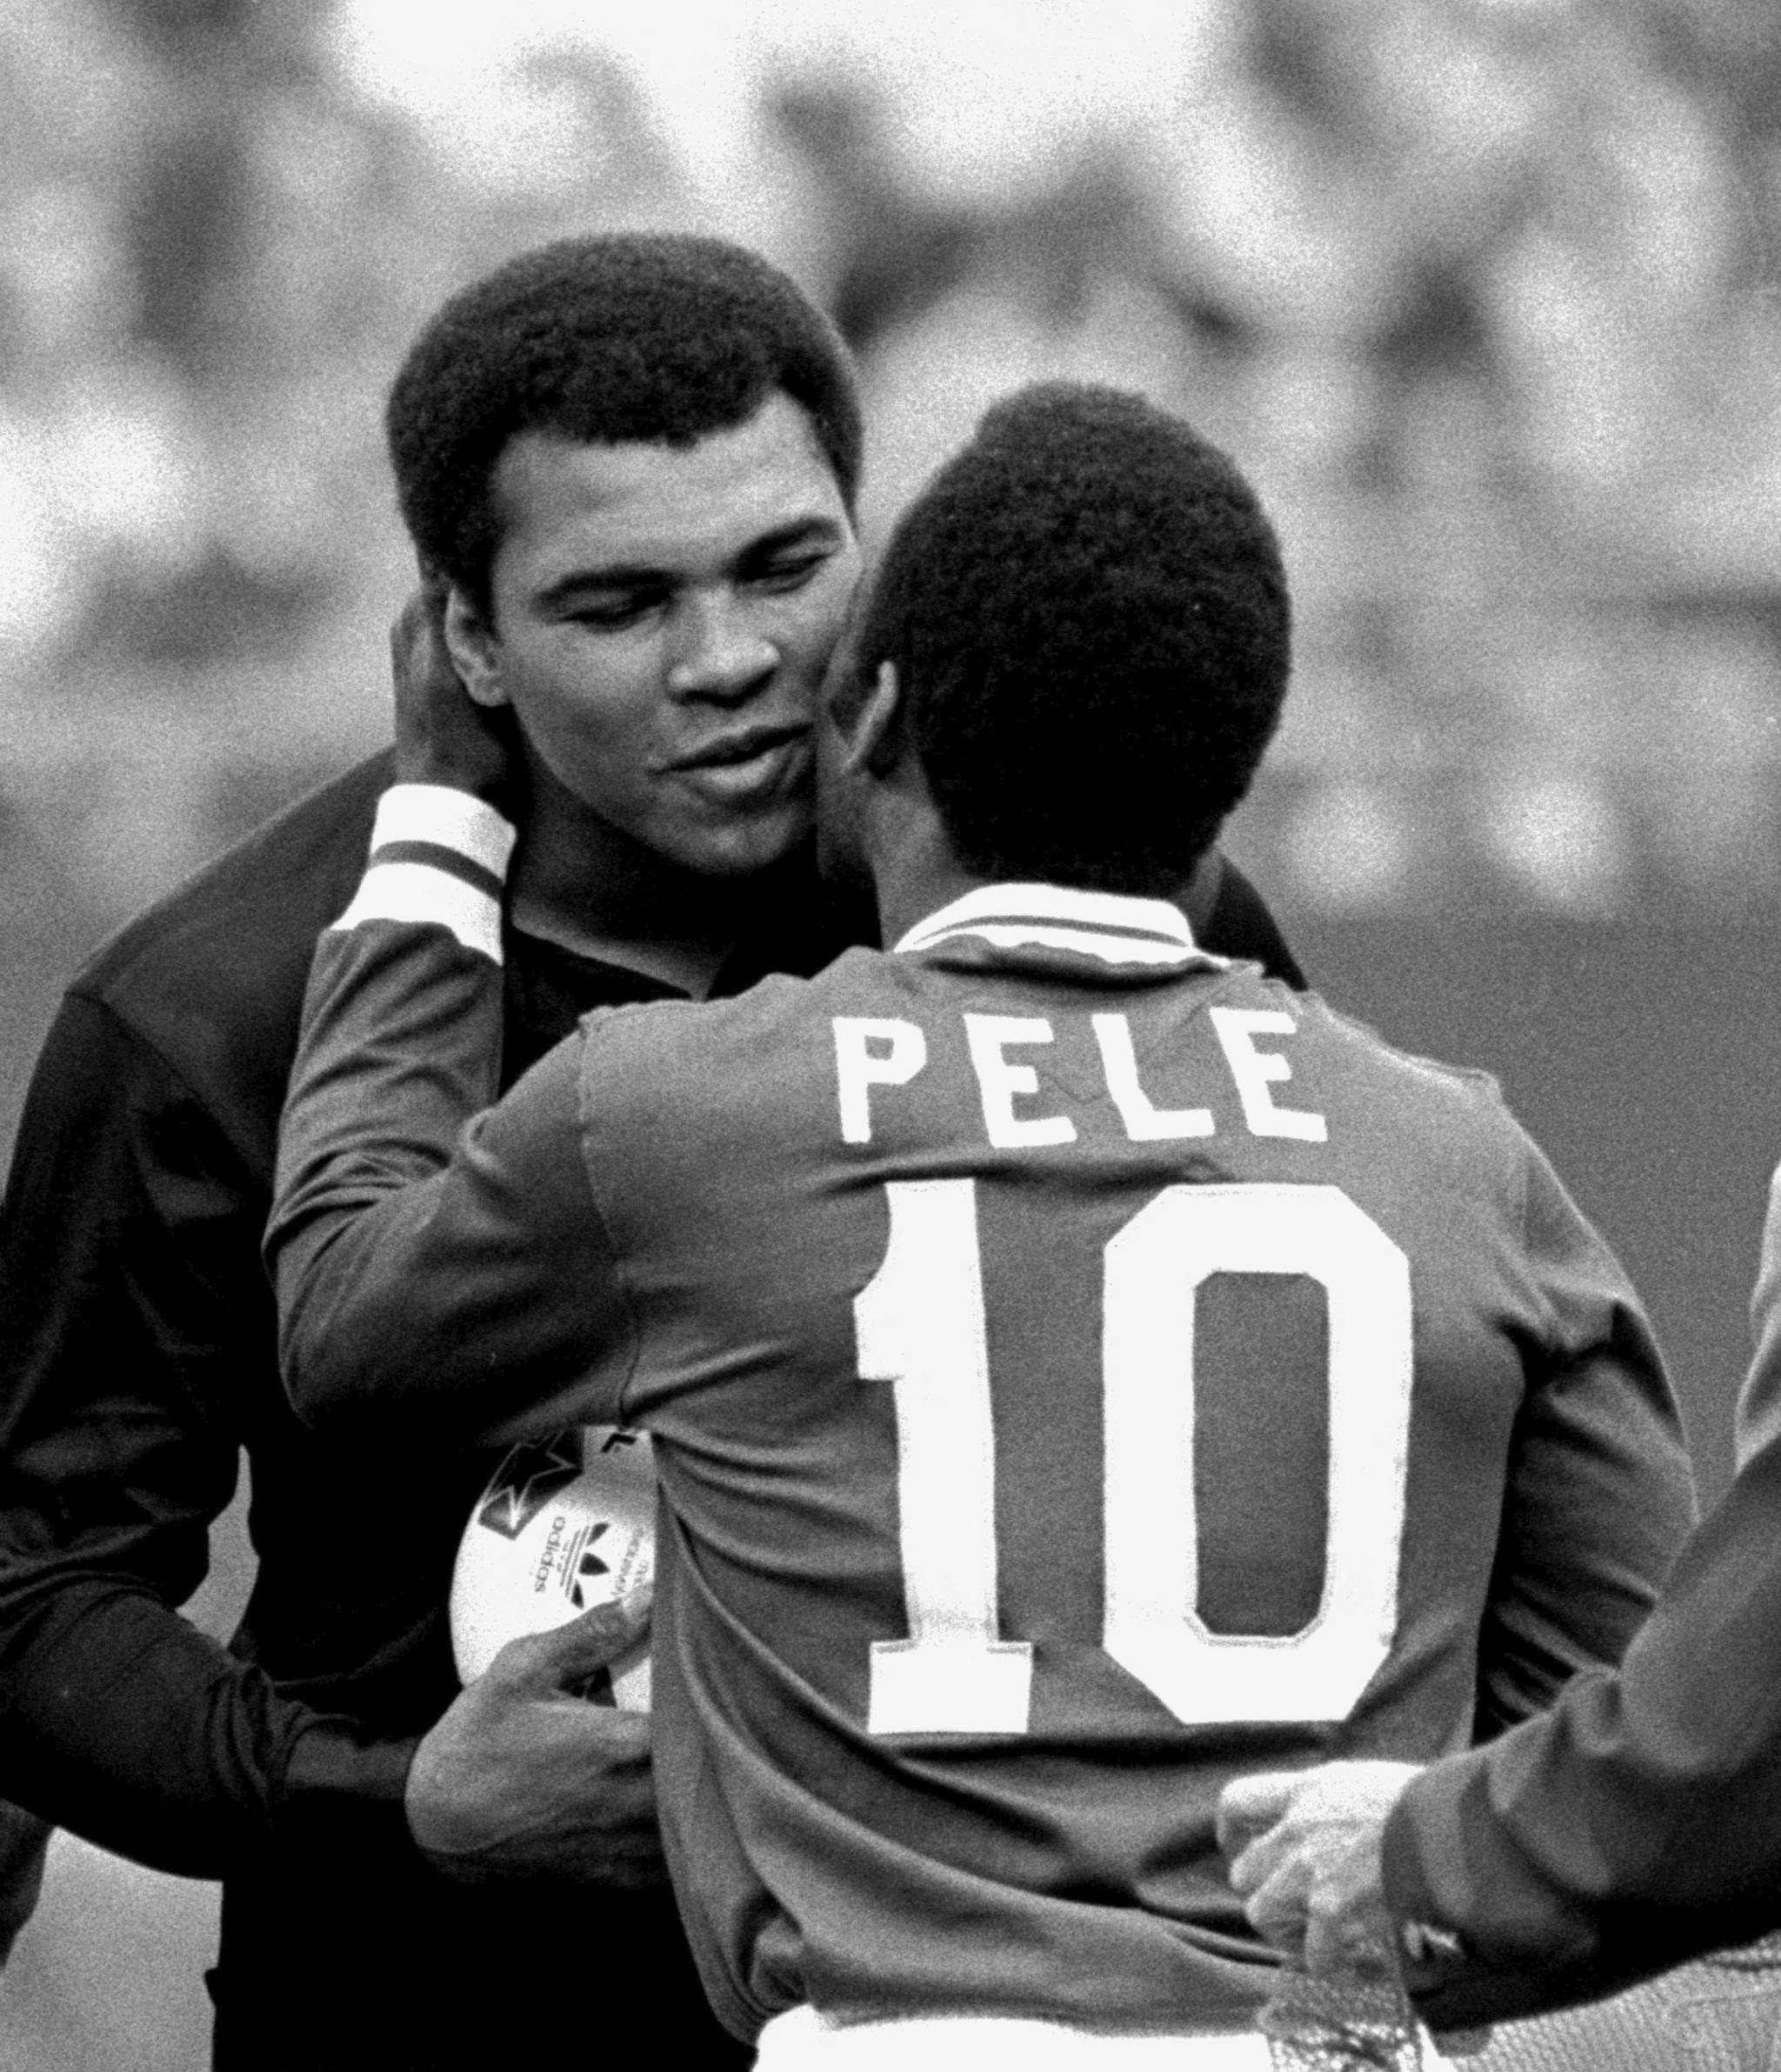 Bokselegenden Muhammad Ali og Pelé - kanskje de to største idrettspersonlighetene i det forrige århundret.